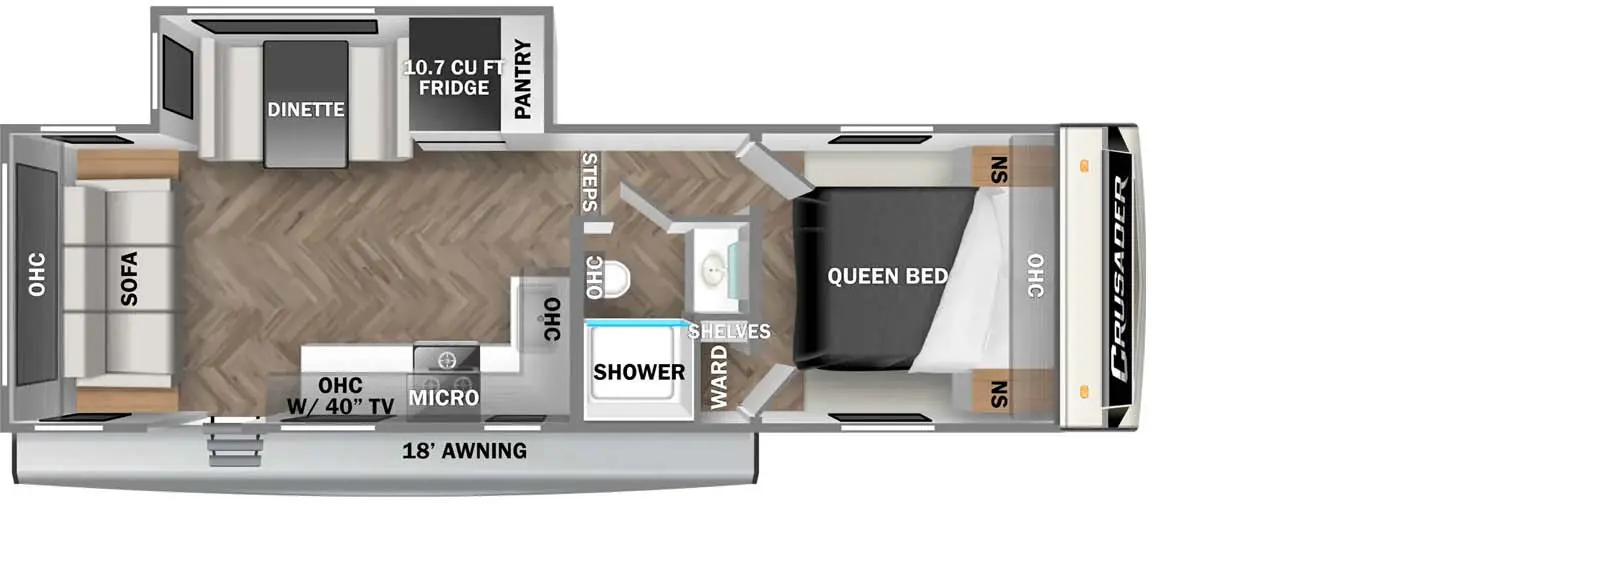 250RLX Floorplan Image